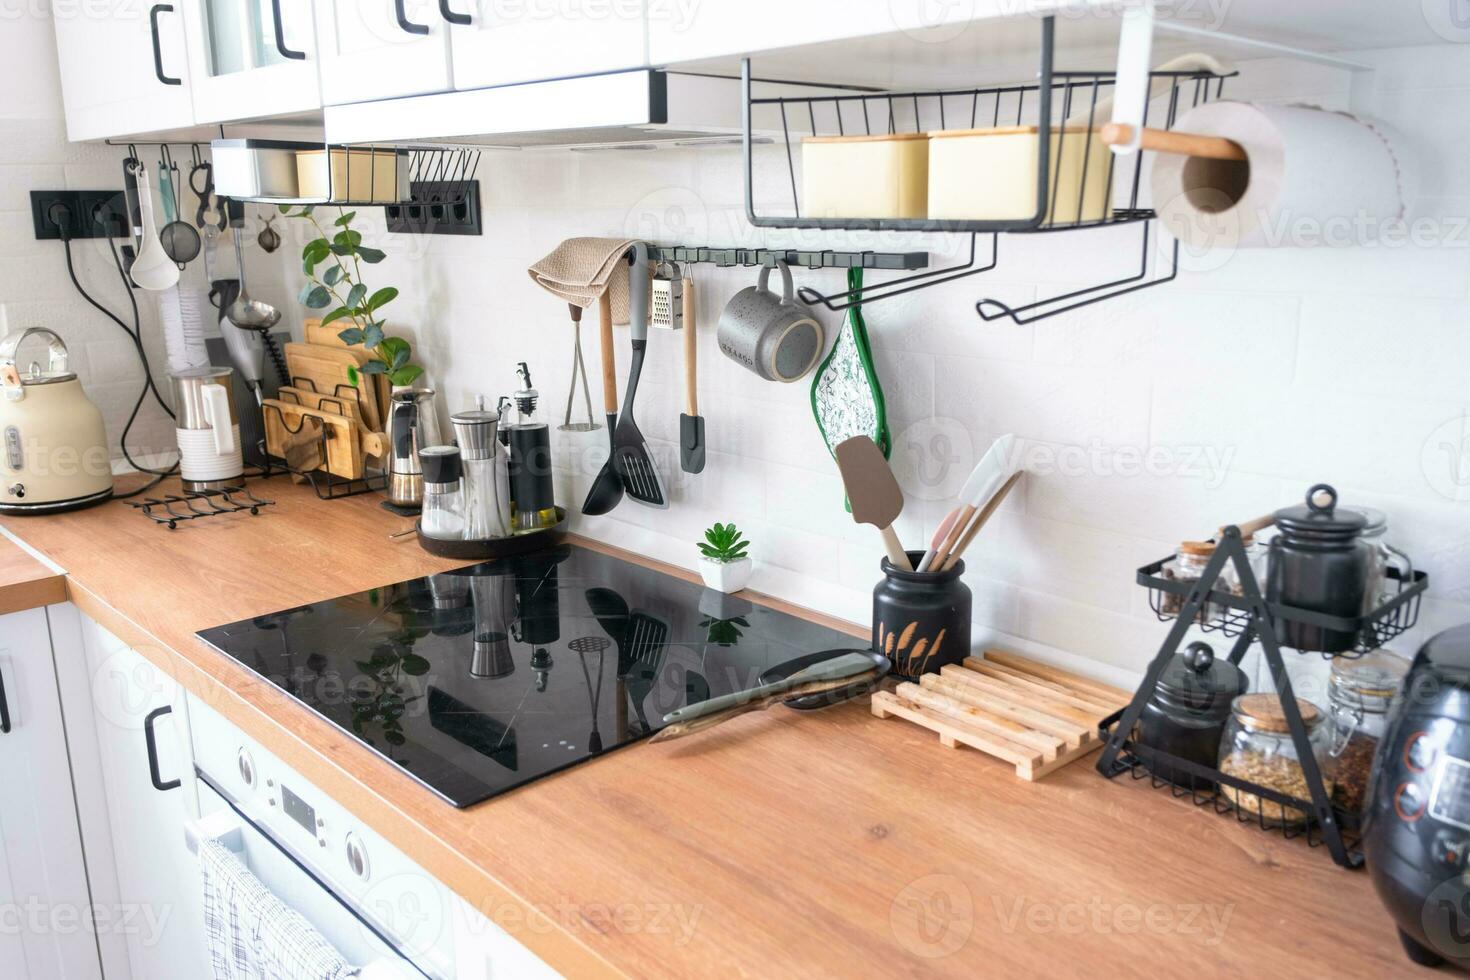 Licht Weiß modern rustikal Küche dekoriert mit eingetopft Pflanzen, Loft-Stil Küche Utensilien. Innere von ein Haus mit Heimpflanzen foto